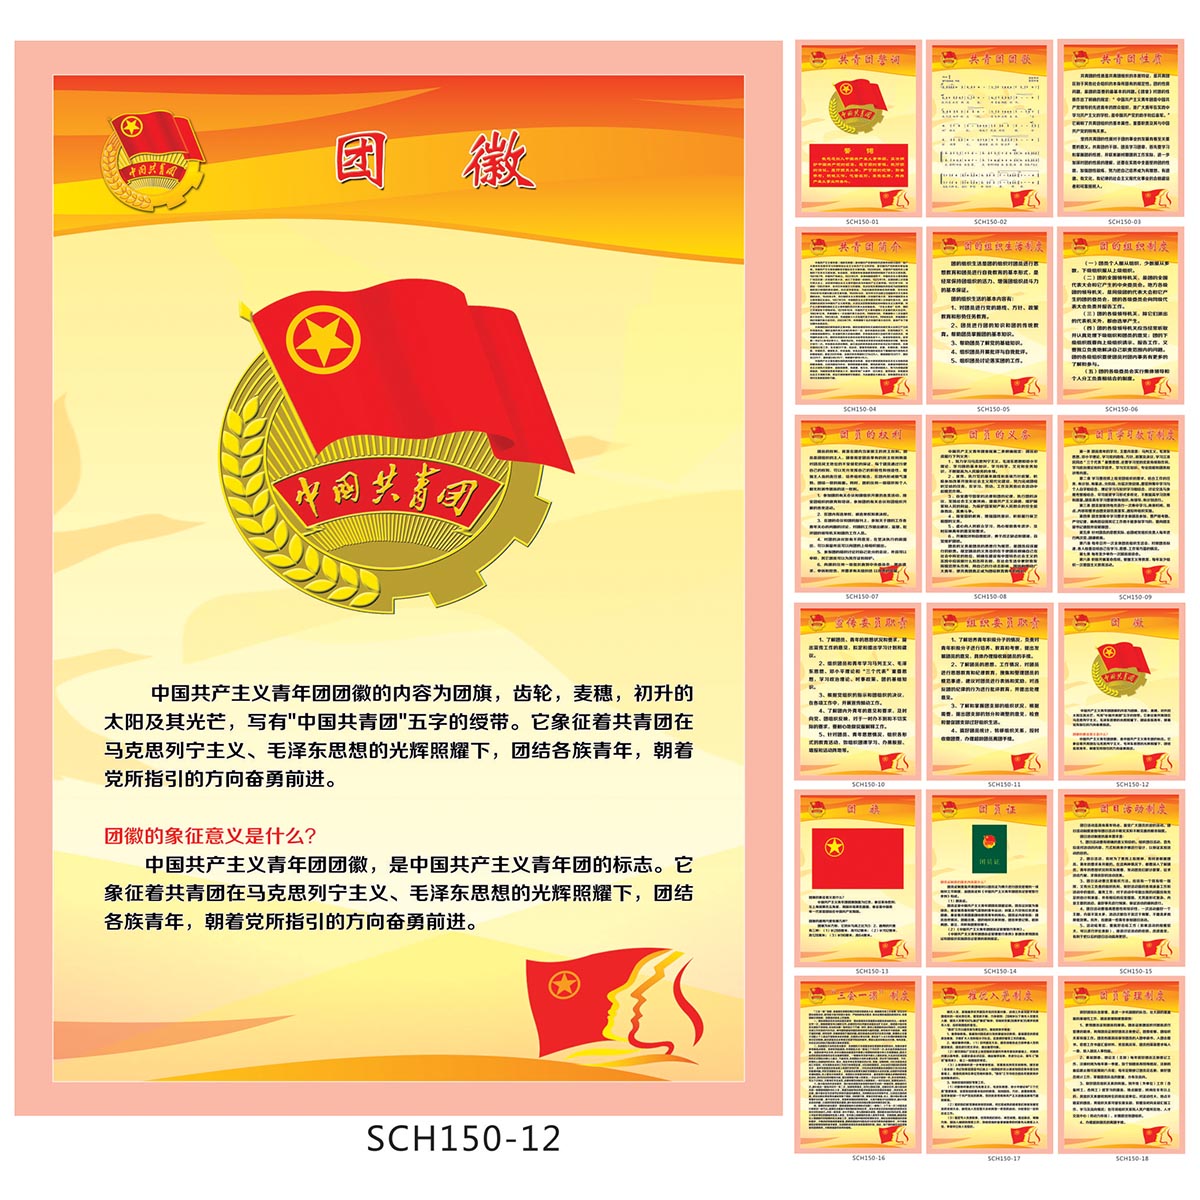 共青团制度牌 团委宣传画 团支部挂图 团徽内容意义贴画SCH150-12